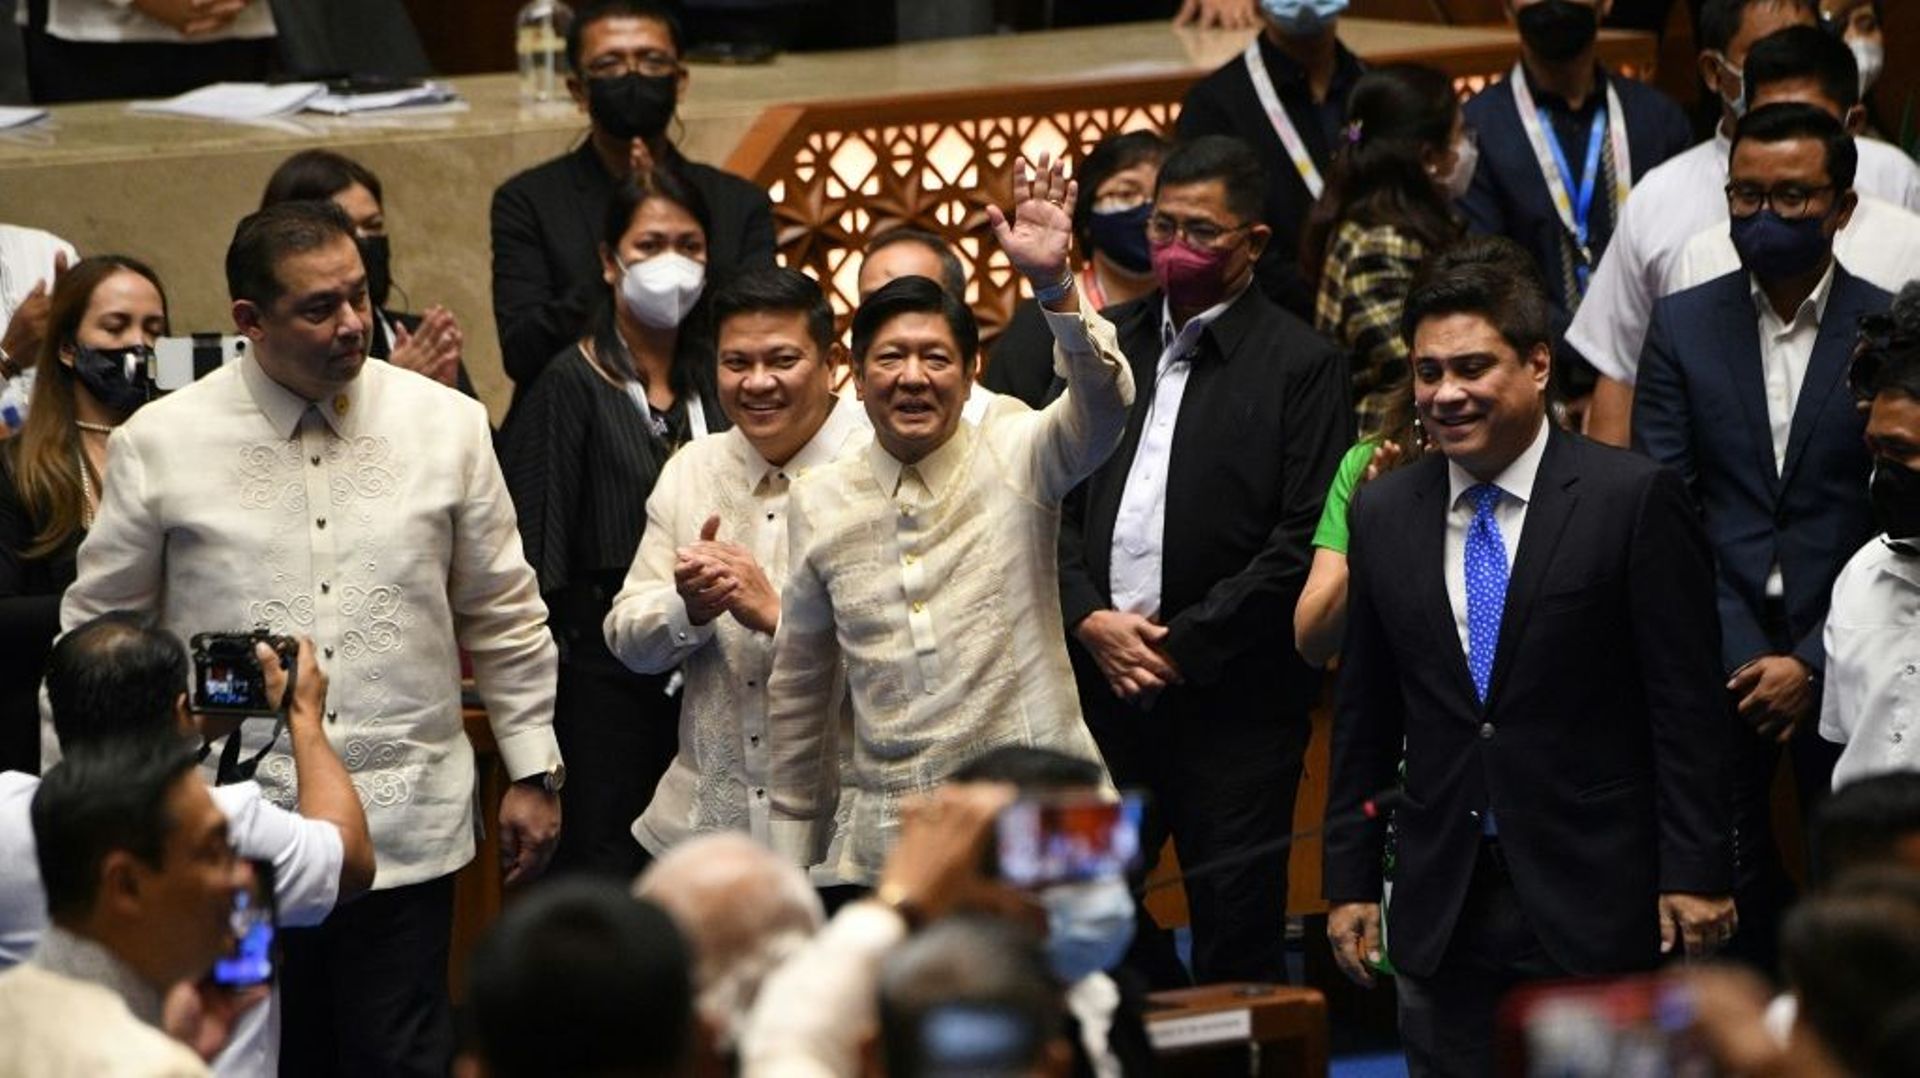 Le président élu des Philippines, Ferdinand Marcos Jr. (C), salue ses partisans lors de sa proclamation en tant que président du pays à la Chambre des représentants à Quezon City, dans la banlieue de Manille, le 25 mai 2022